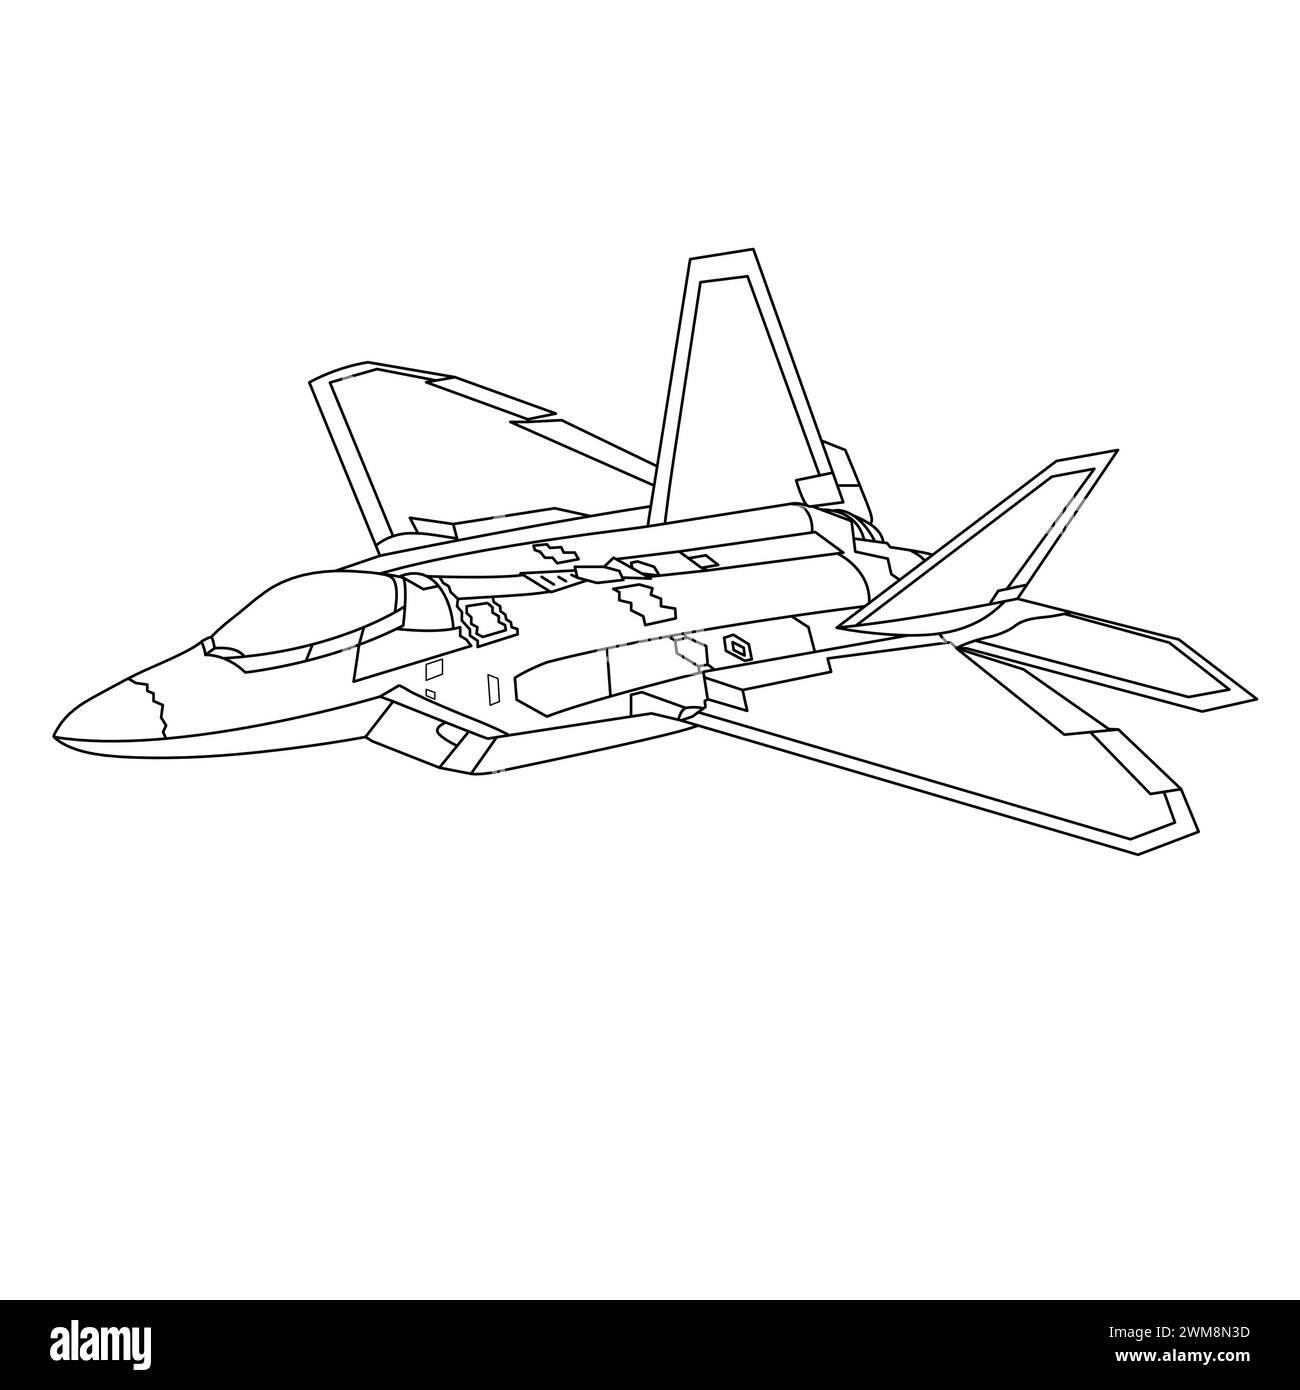 F-22 Raptor Flugzeugumrissdarstellung. Ausmalbuch Für Militärflugzeuge. Schwarz-Weiß-Kampfflugzeug Zeichenlinie Kunstvektor. War Plane Contour (Kontur Der Kriegsebene) Stock Vektor